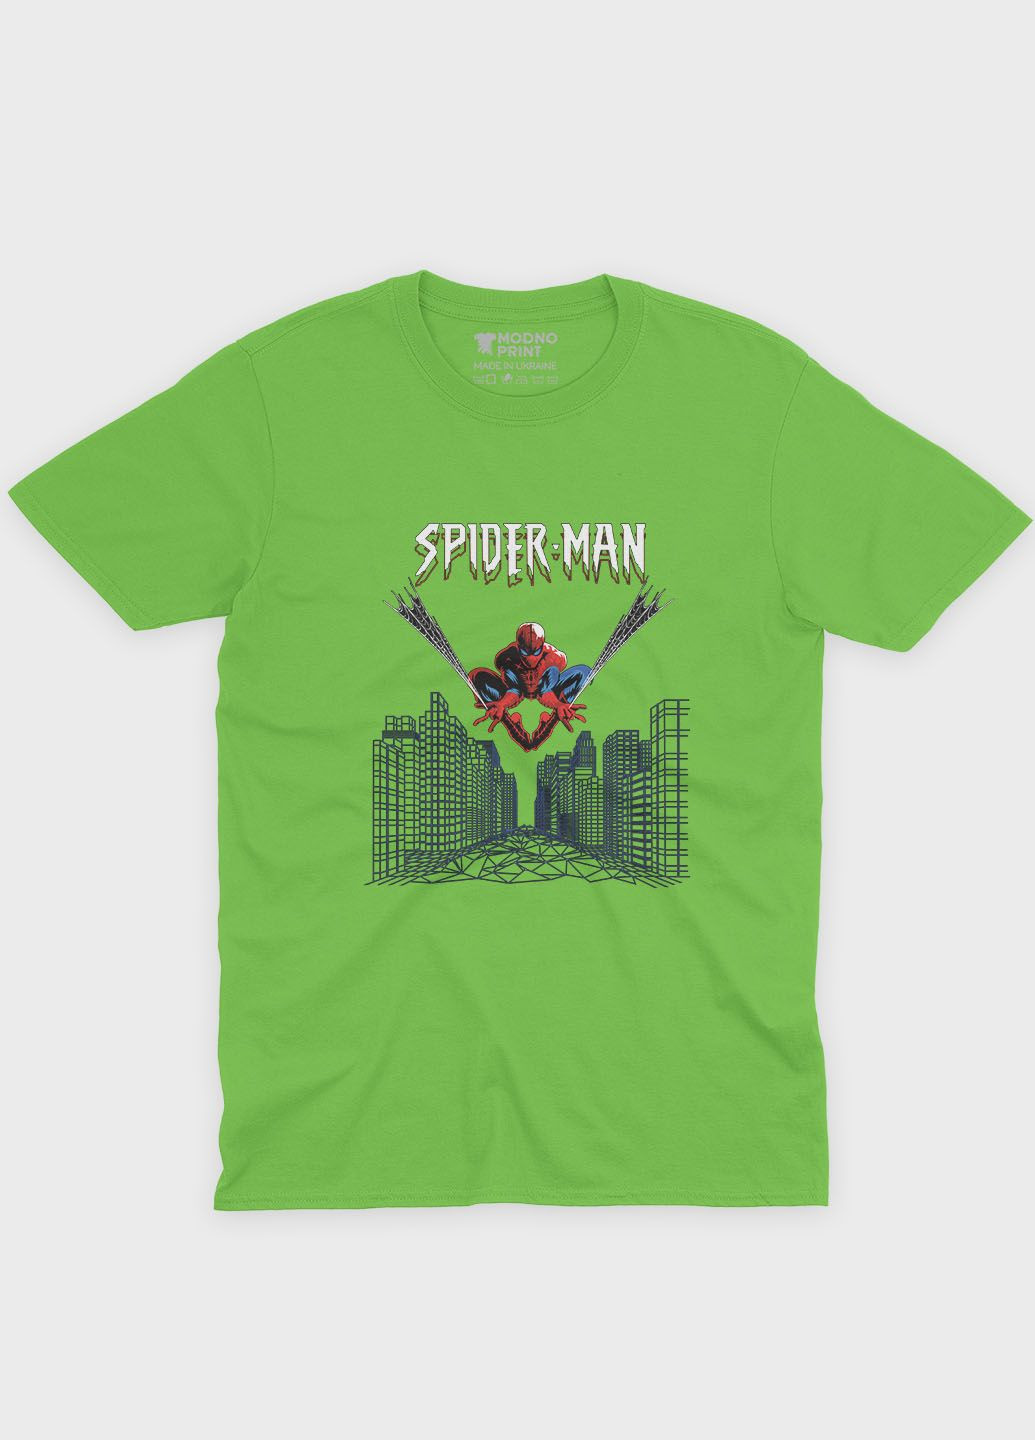 Салатовая демисезонная футболка для девочки с принтом супергероя - человек-паук (ts001-1-kiw-006-014-038-g) Modno